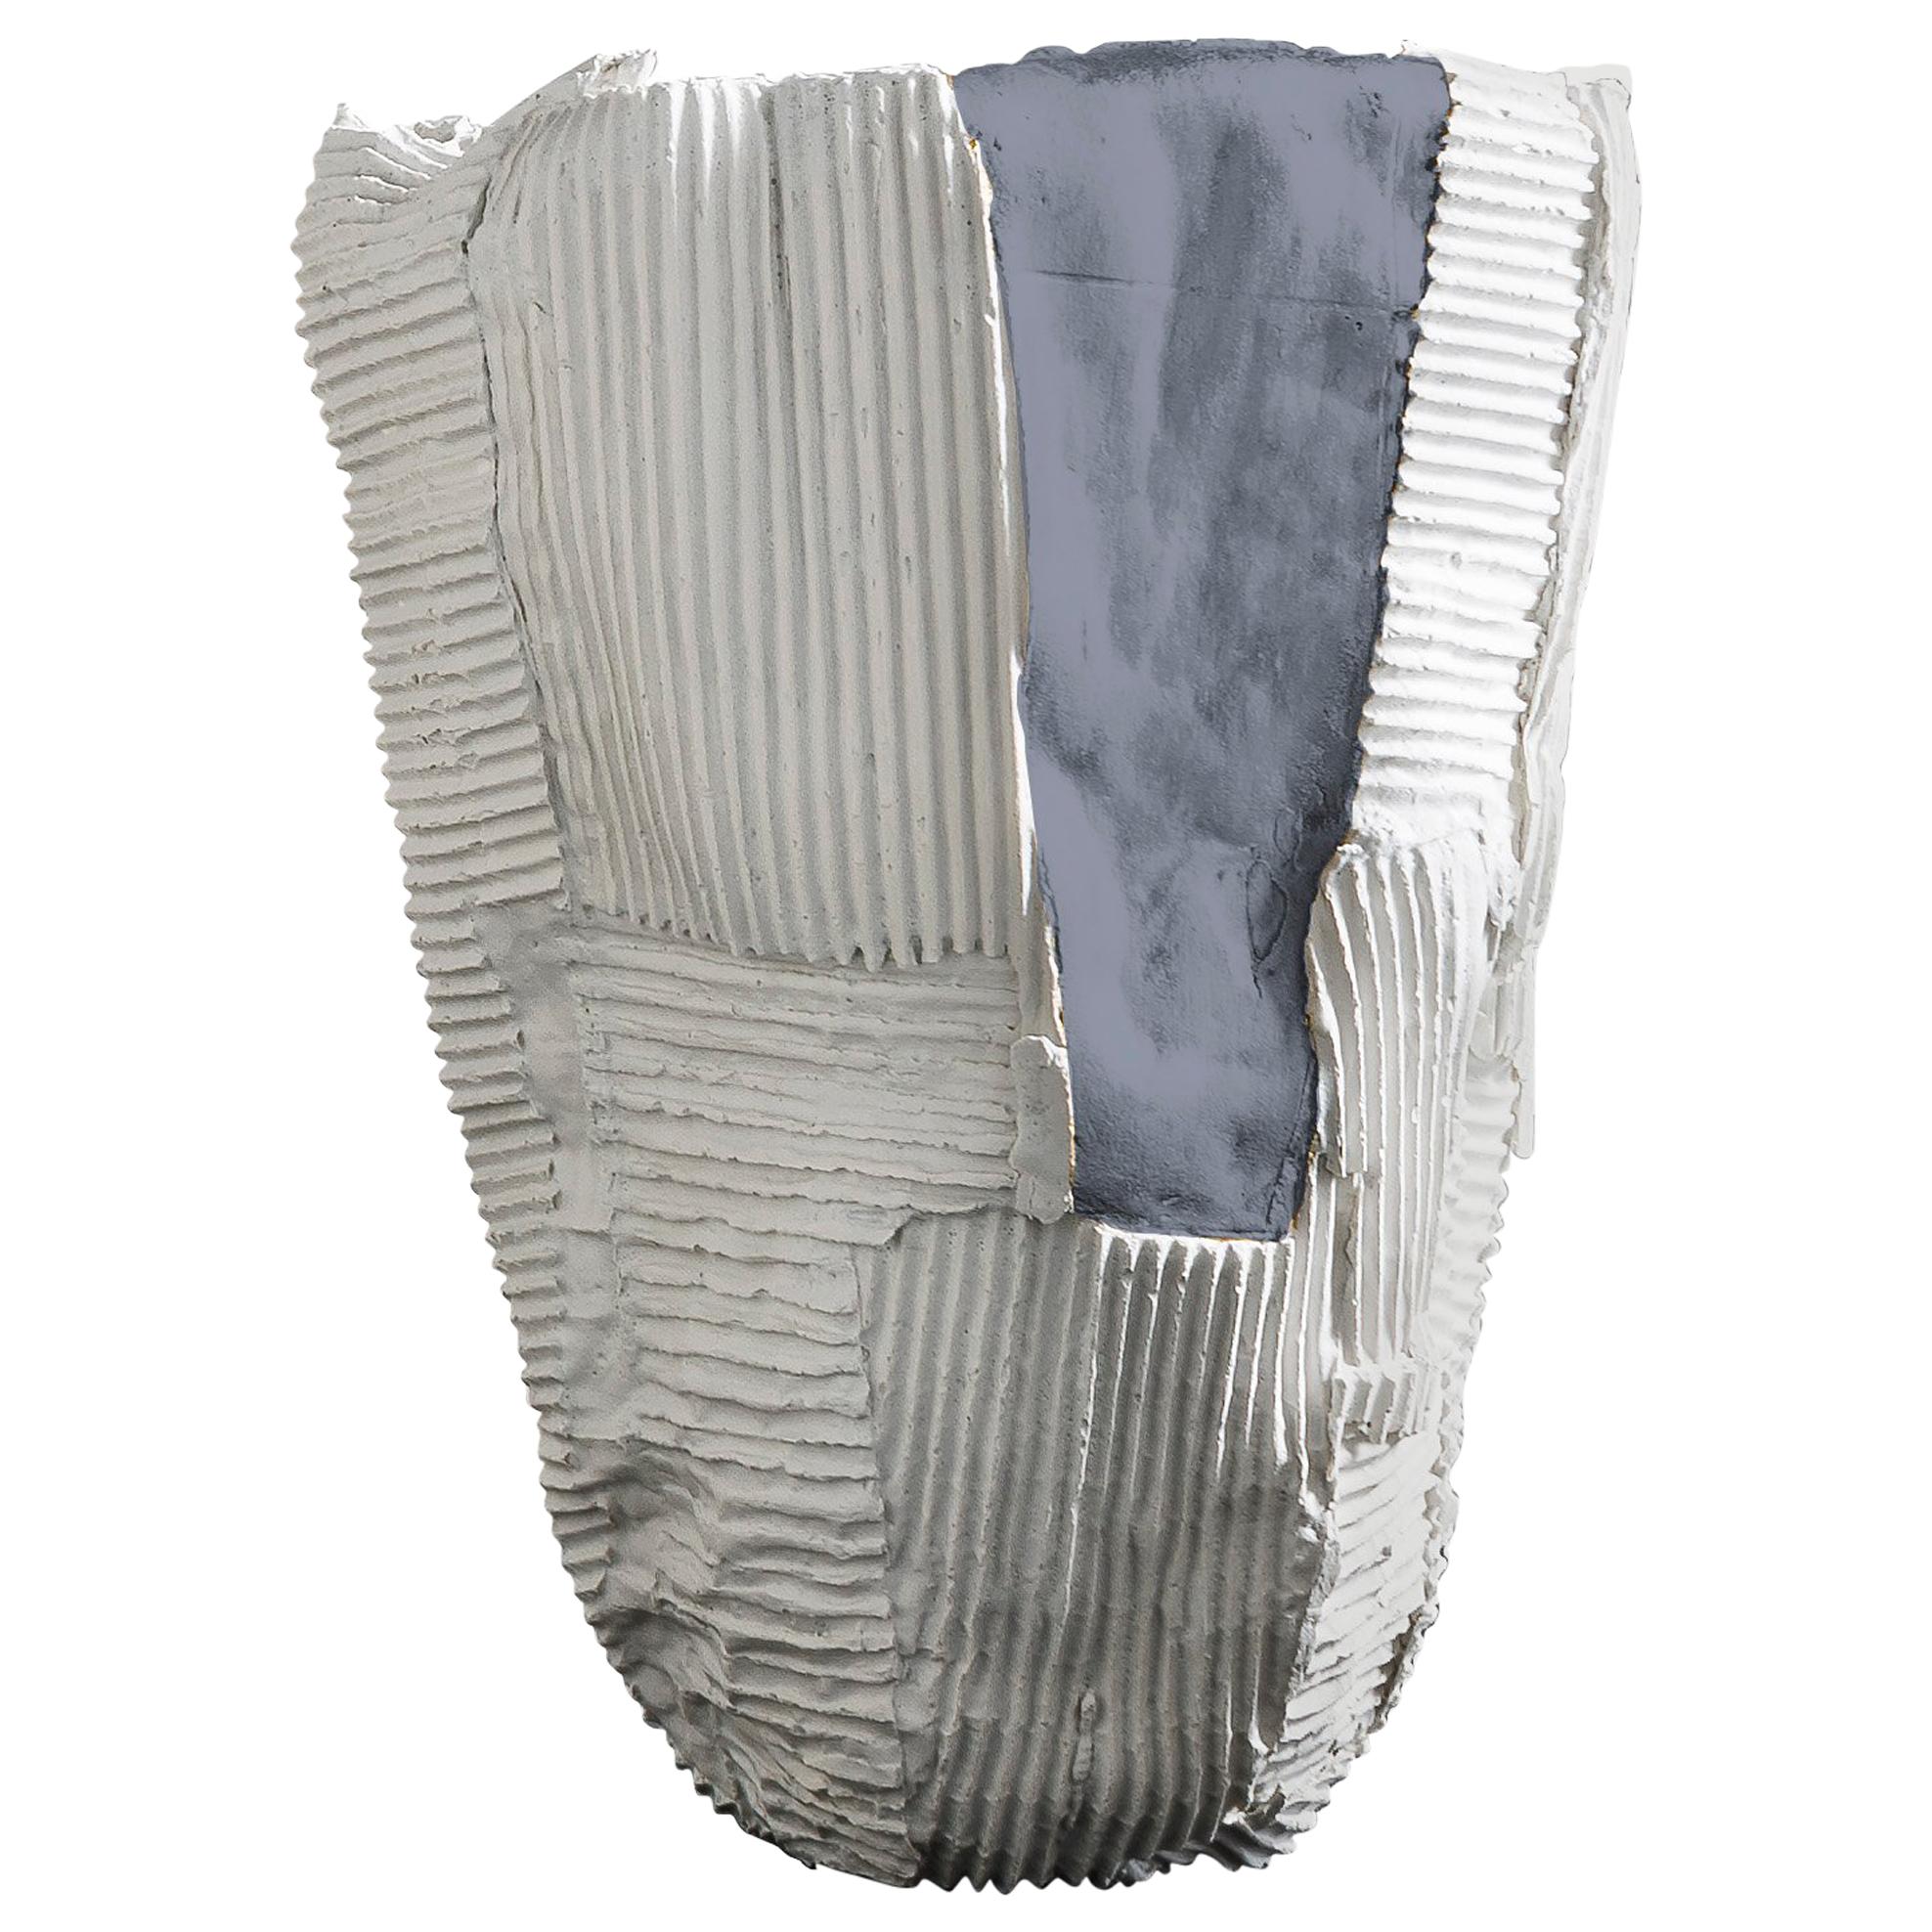 Grand vase contemporain en céramique Cartocci Texture blanc et gris